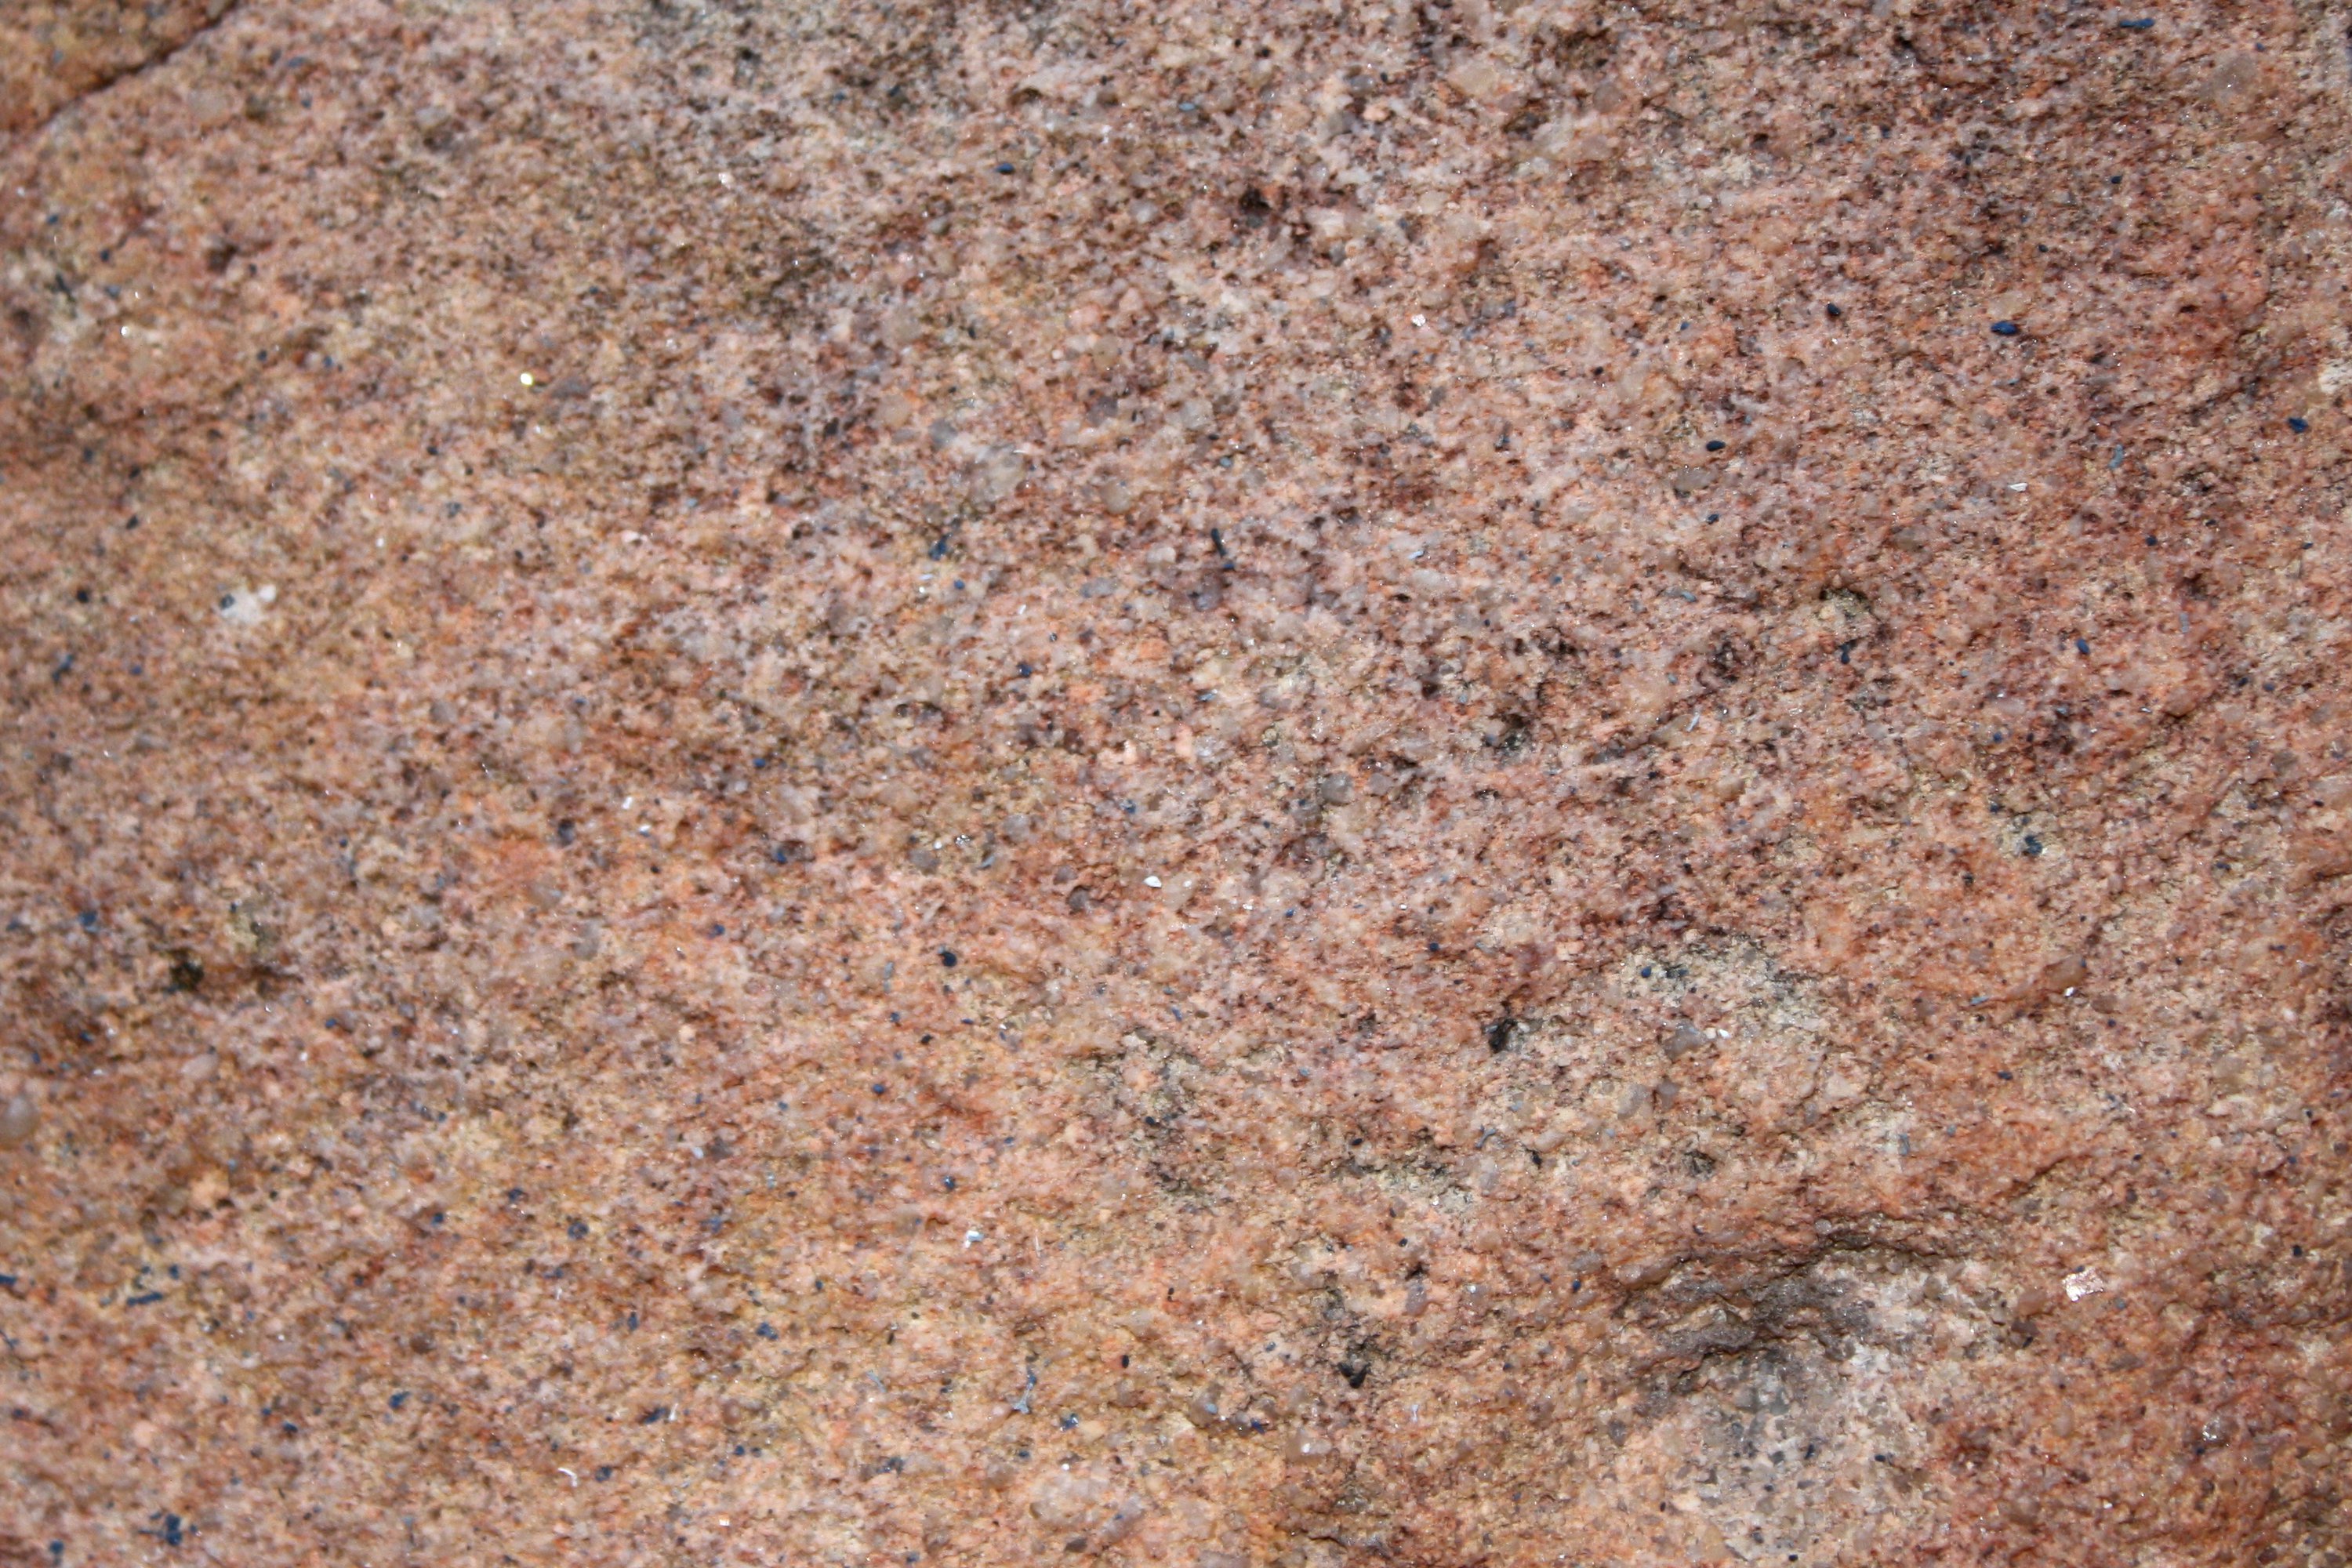 Pink Granite Rock Texture Picture Photograph Photos Public